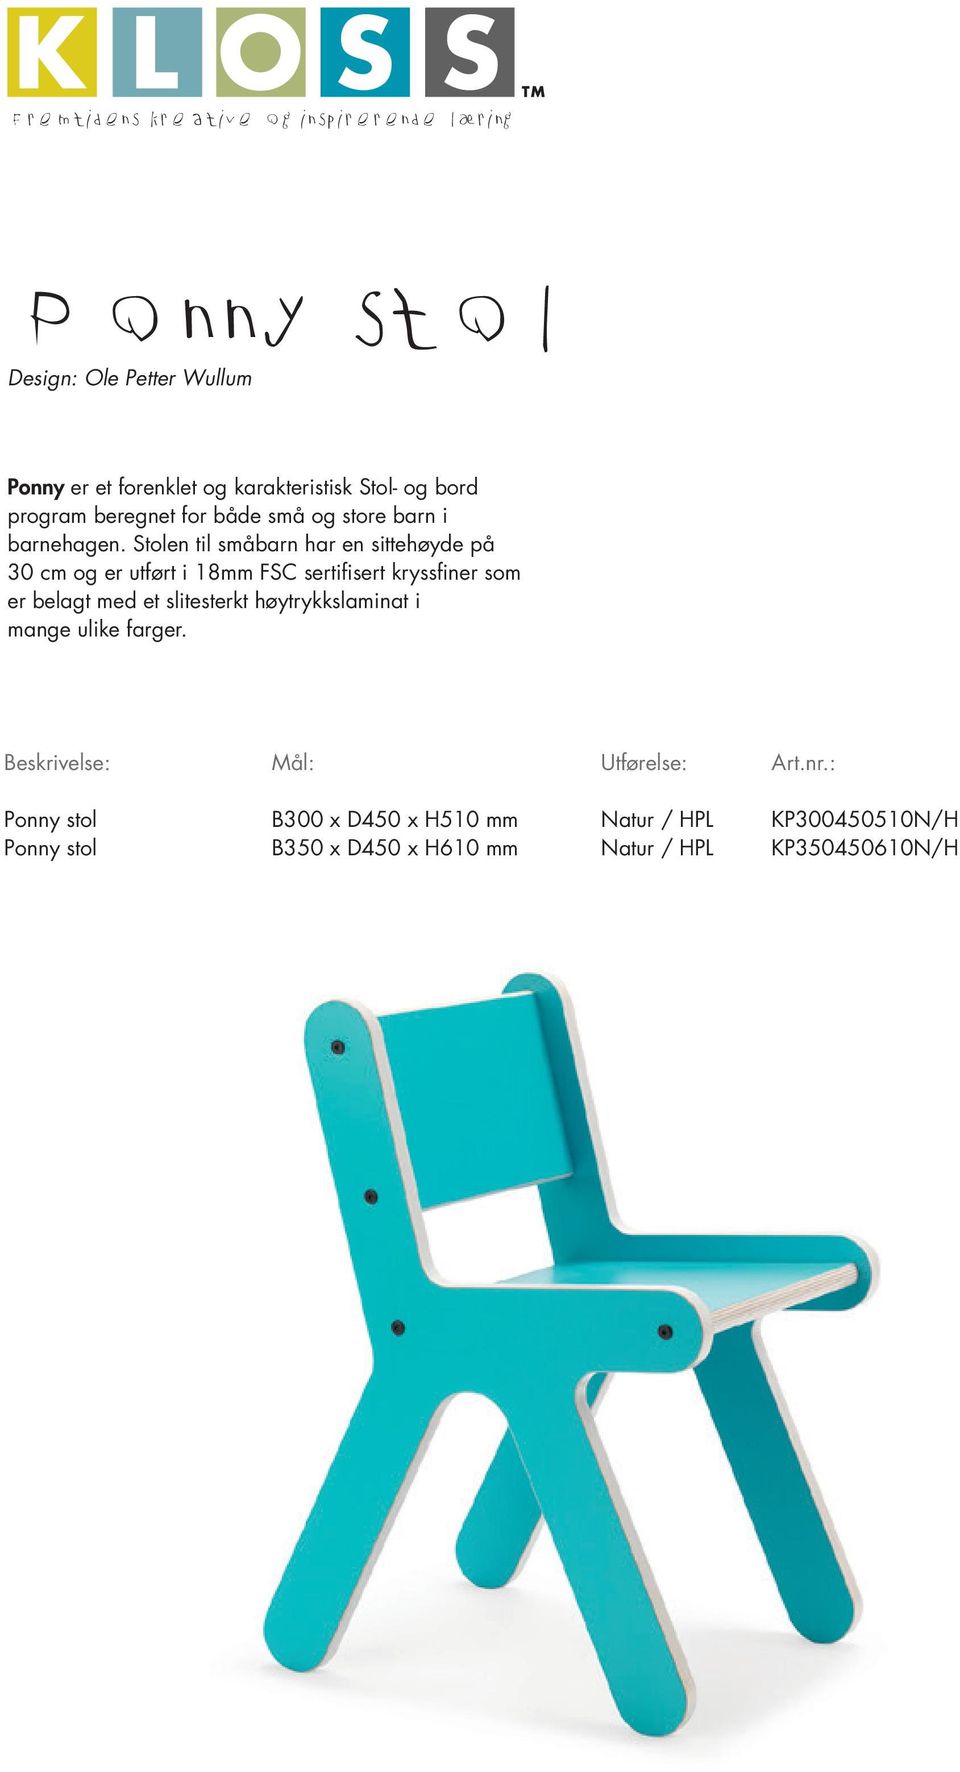 Stolen til småbarn har en sittehøyde på 30 cm og er utført i 18mm FSC sertifisert kryssfiner som er belagt med